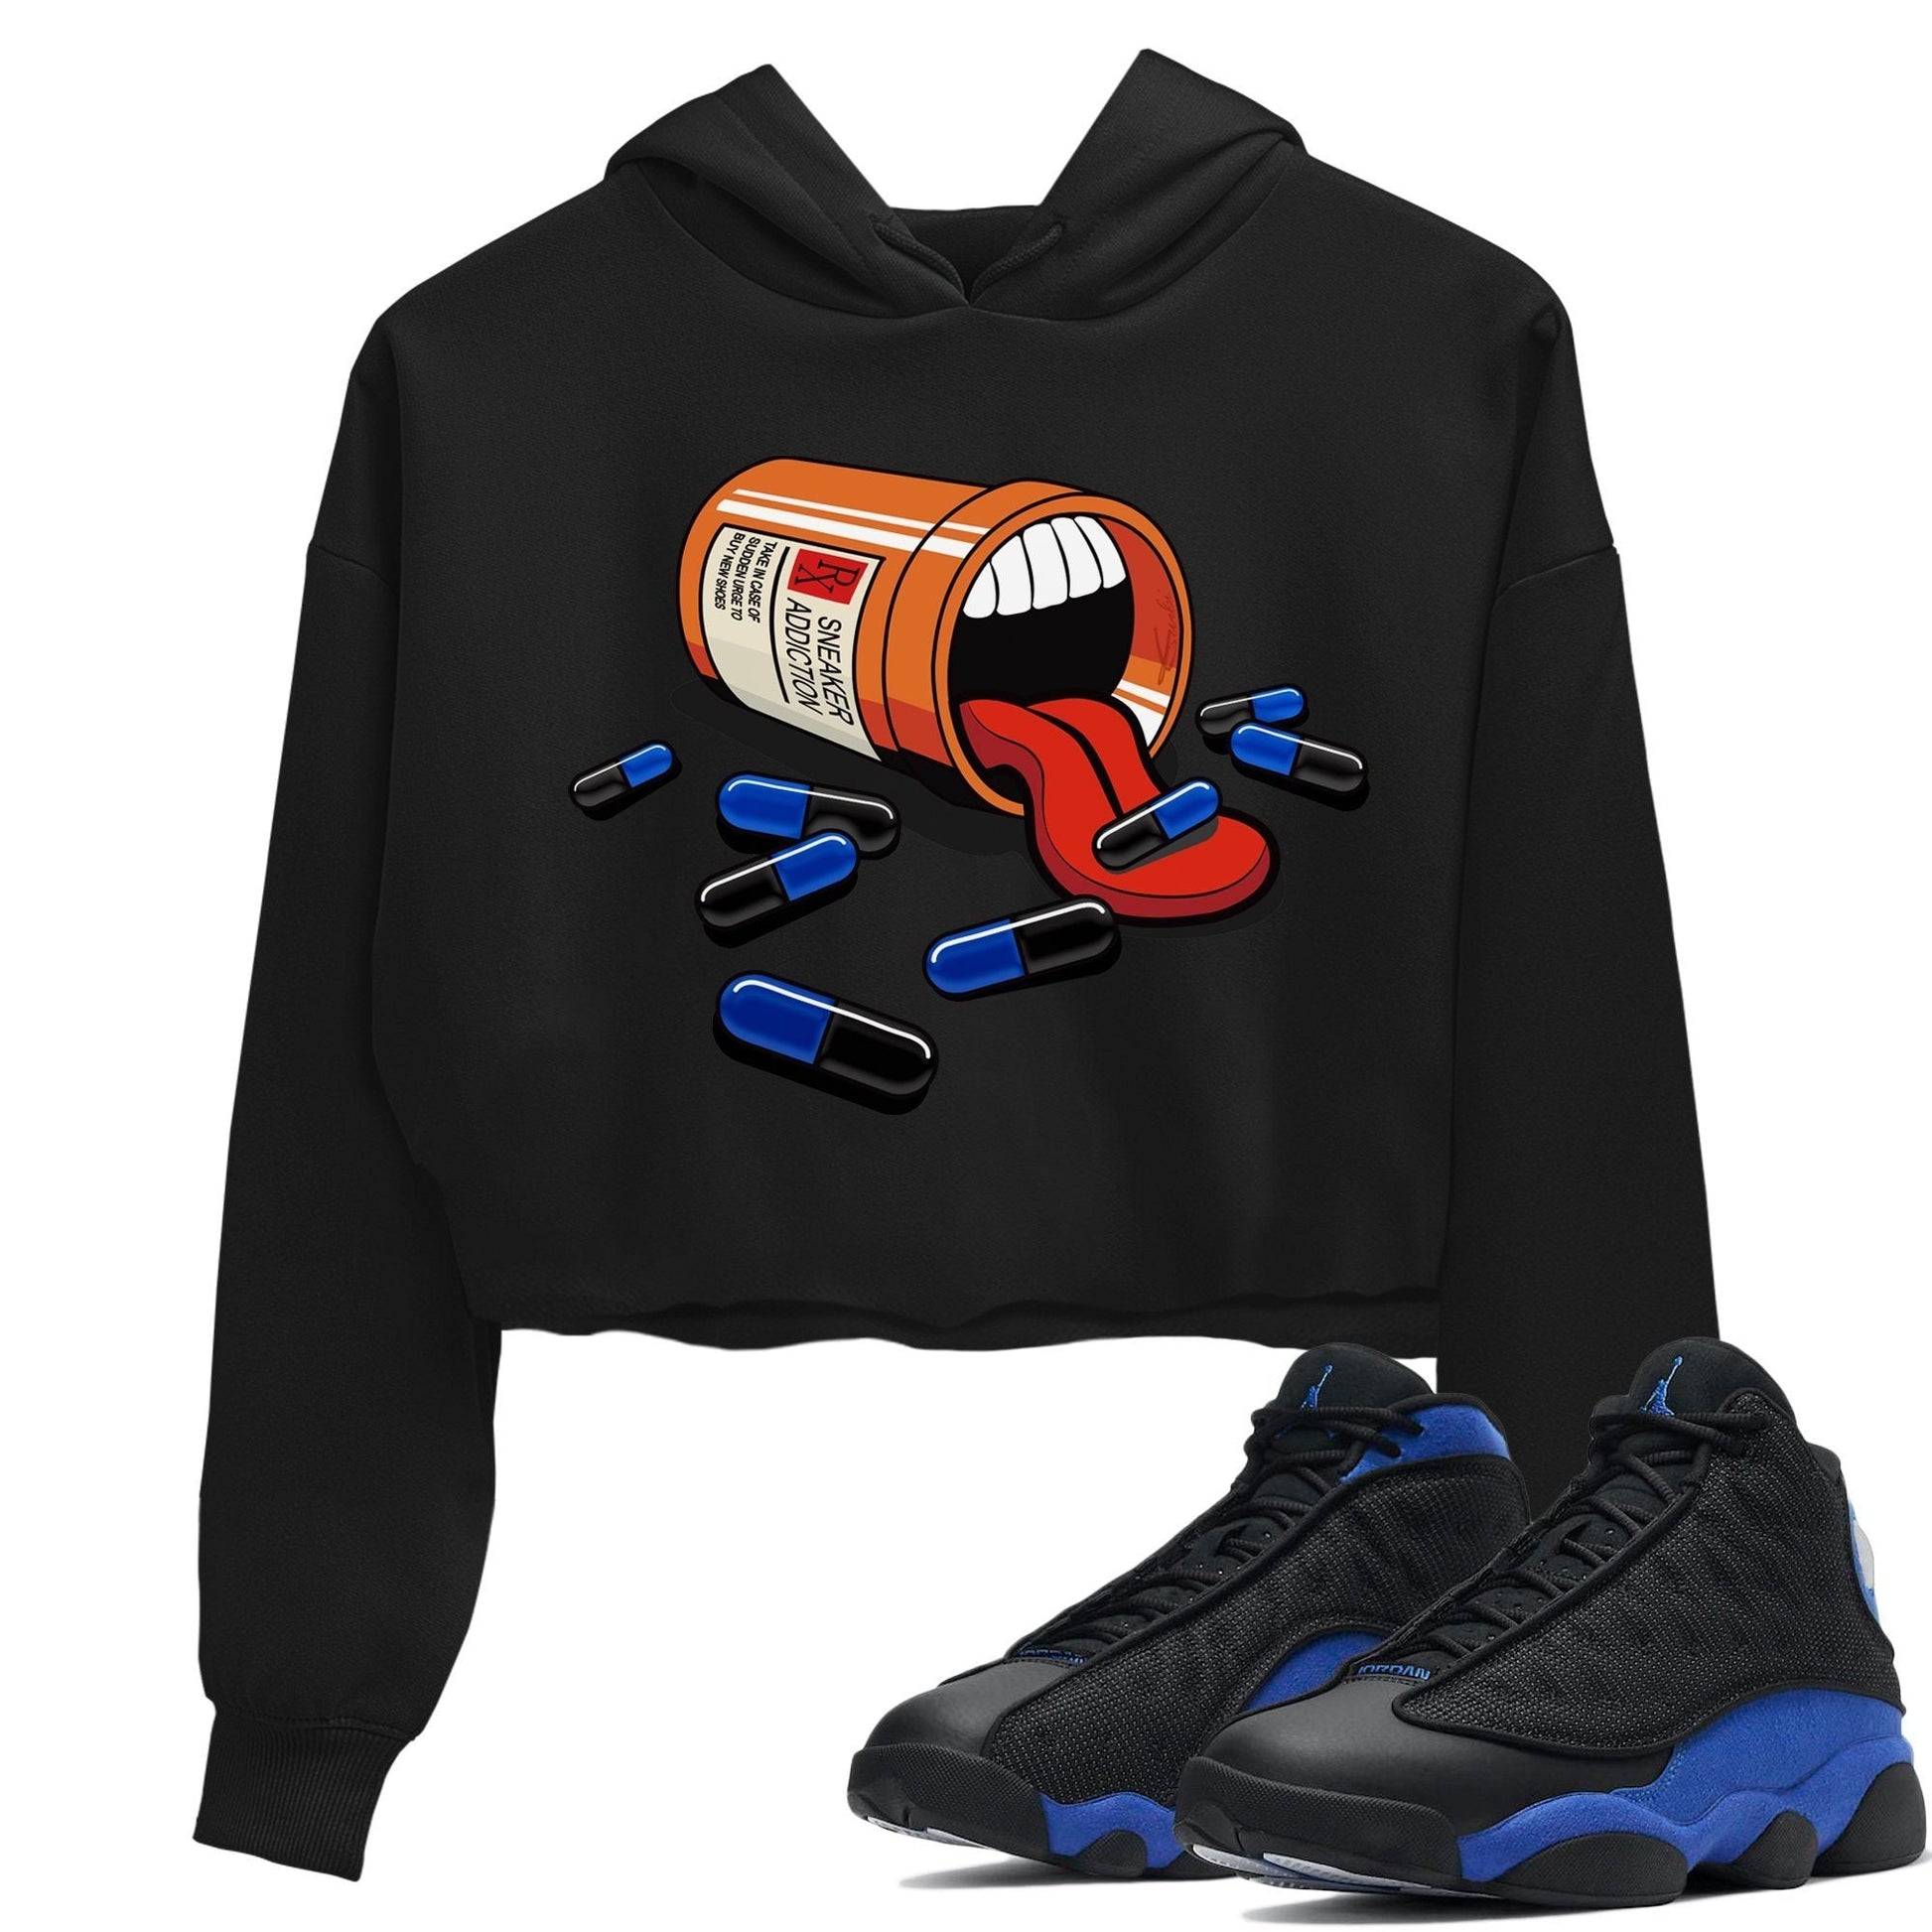 Jordan 13 Hyper | Sneaker Addiction Women's Shirts | SNRT Sneaker Tees SNRT Sneaker T-shirts